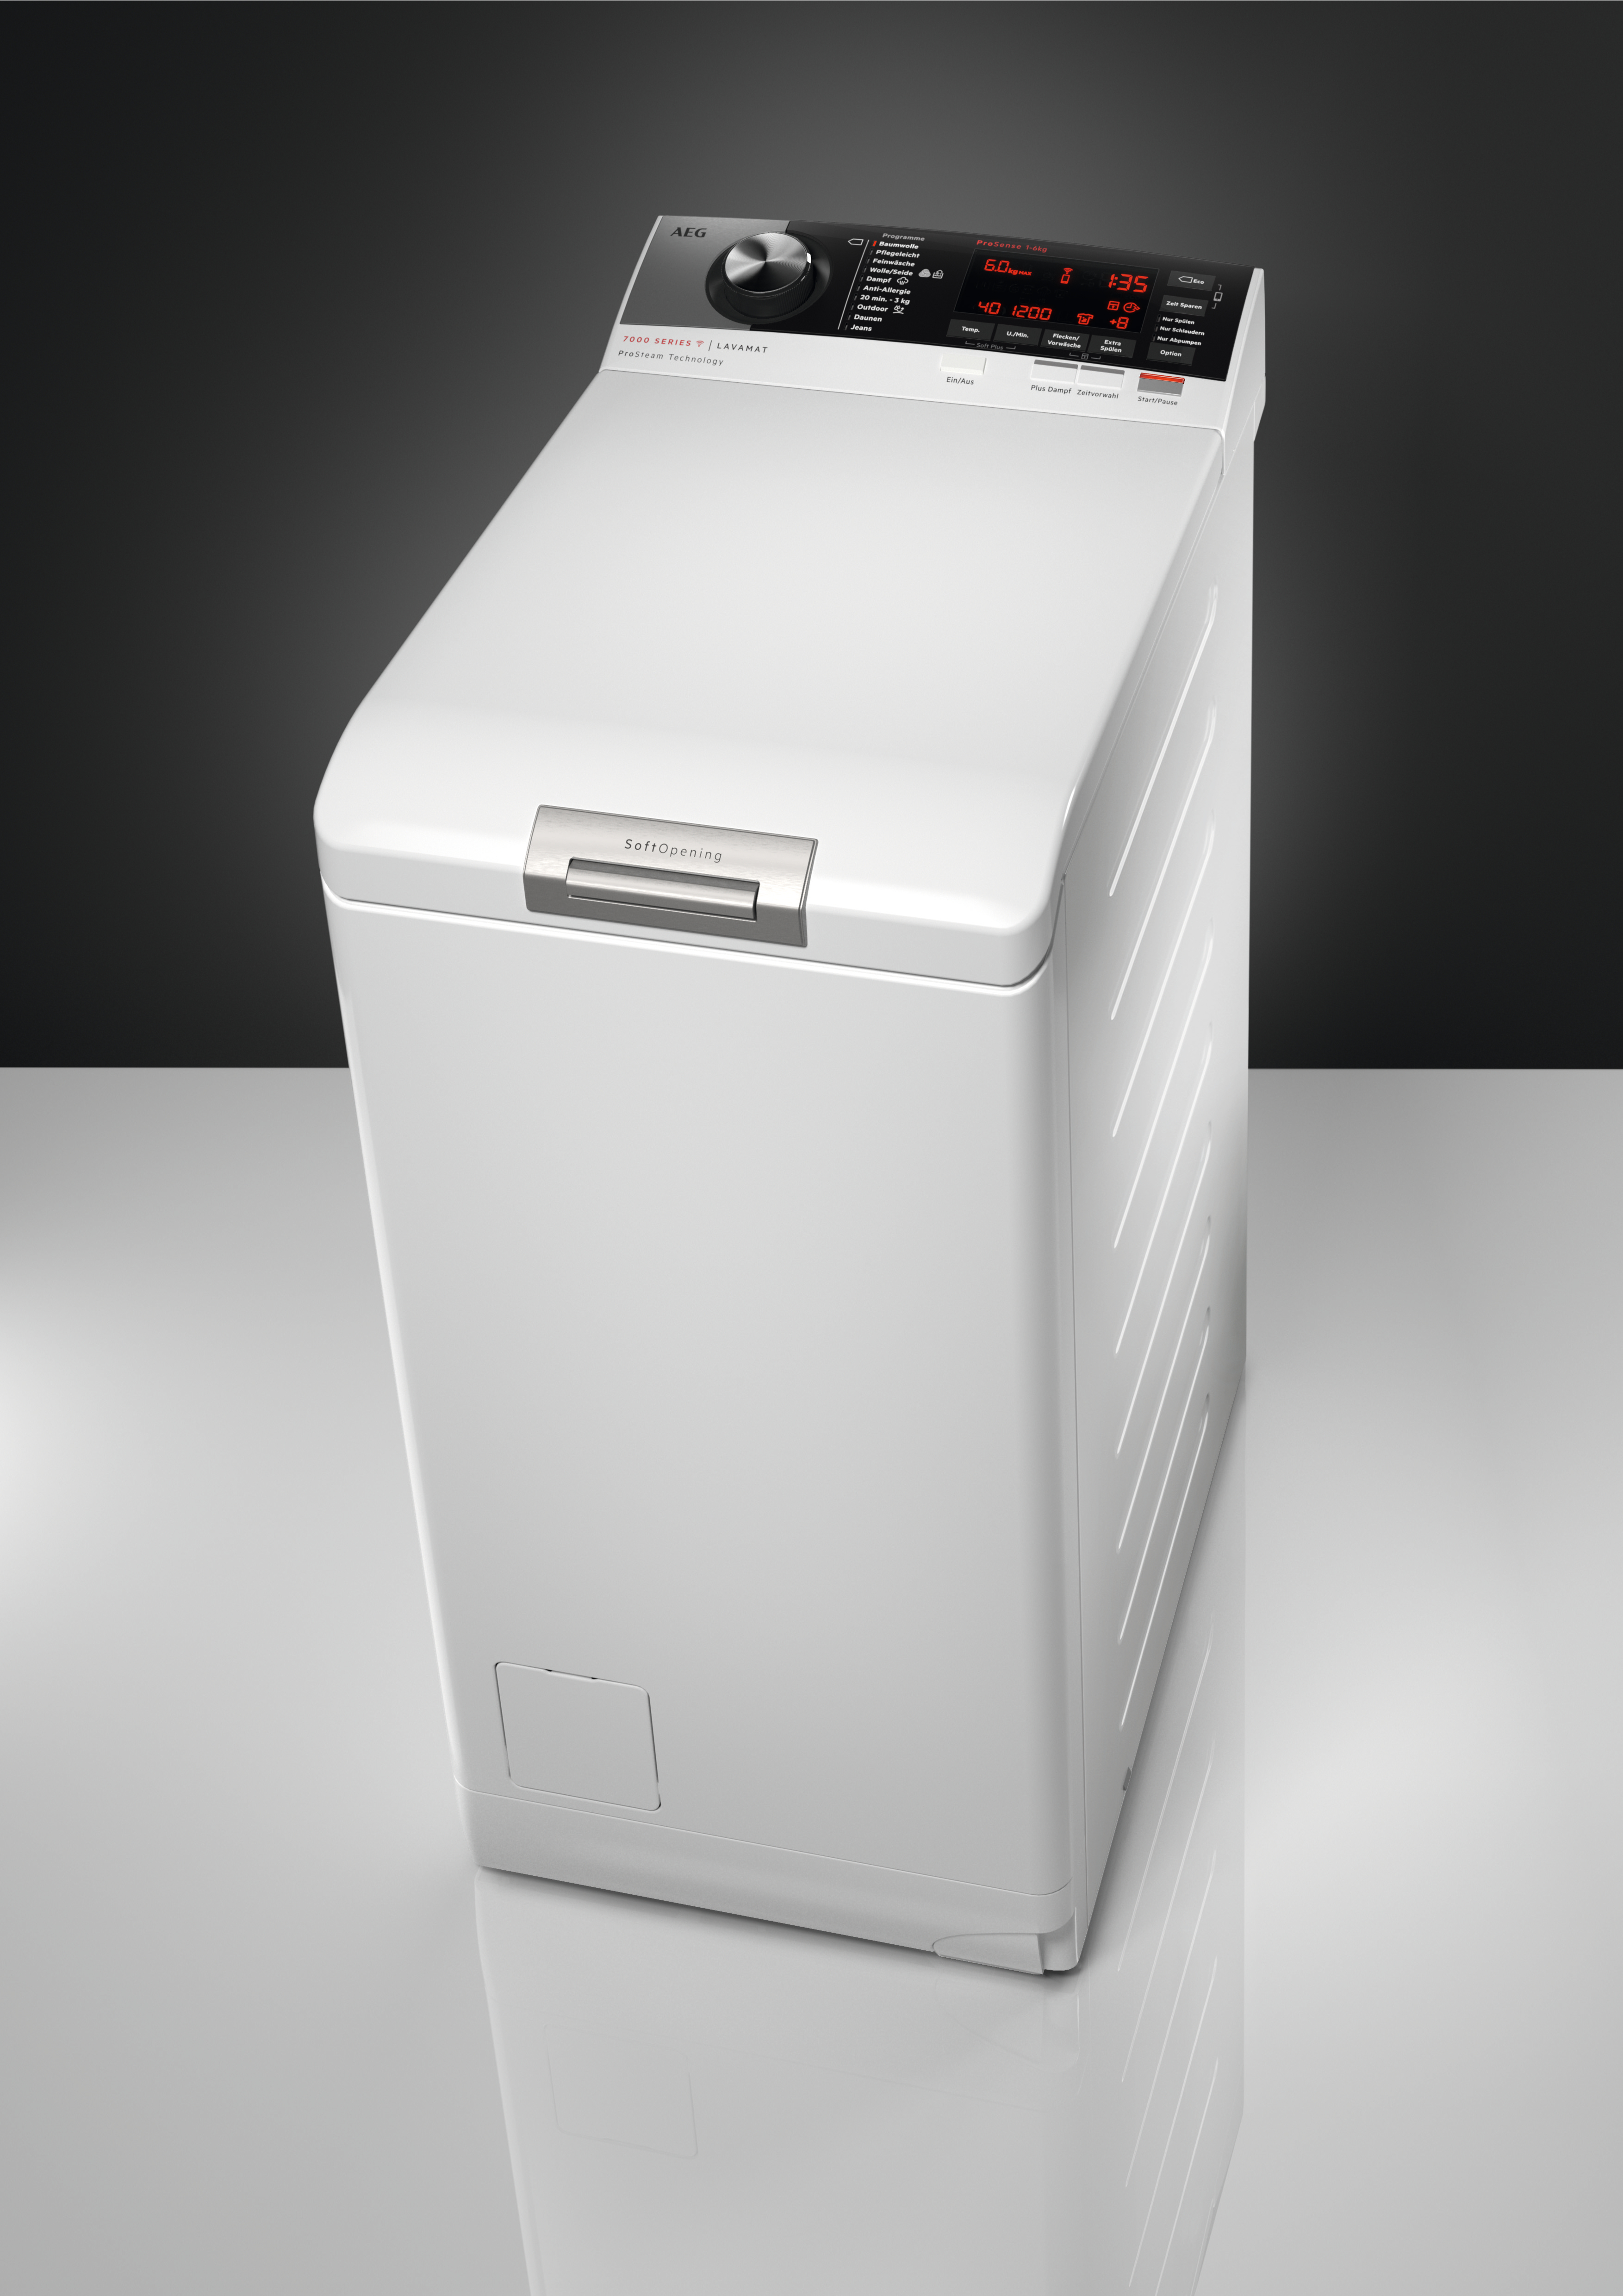 kg, Ja) ÖkoMix AEG Waschmaschine Serie 1451 8000 Vormisch-Technologie mit (6 U/Min., L8TEA80560 B,